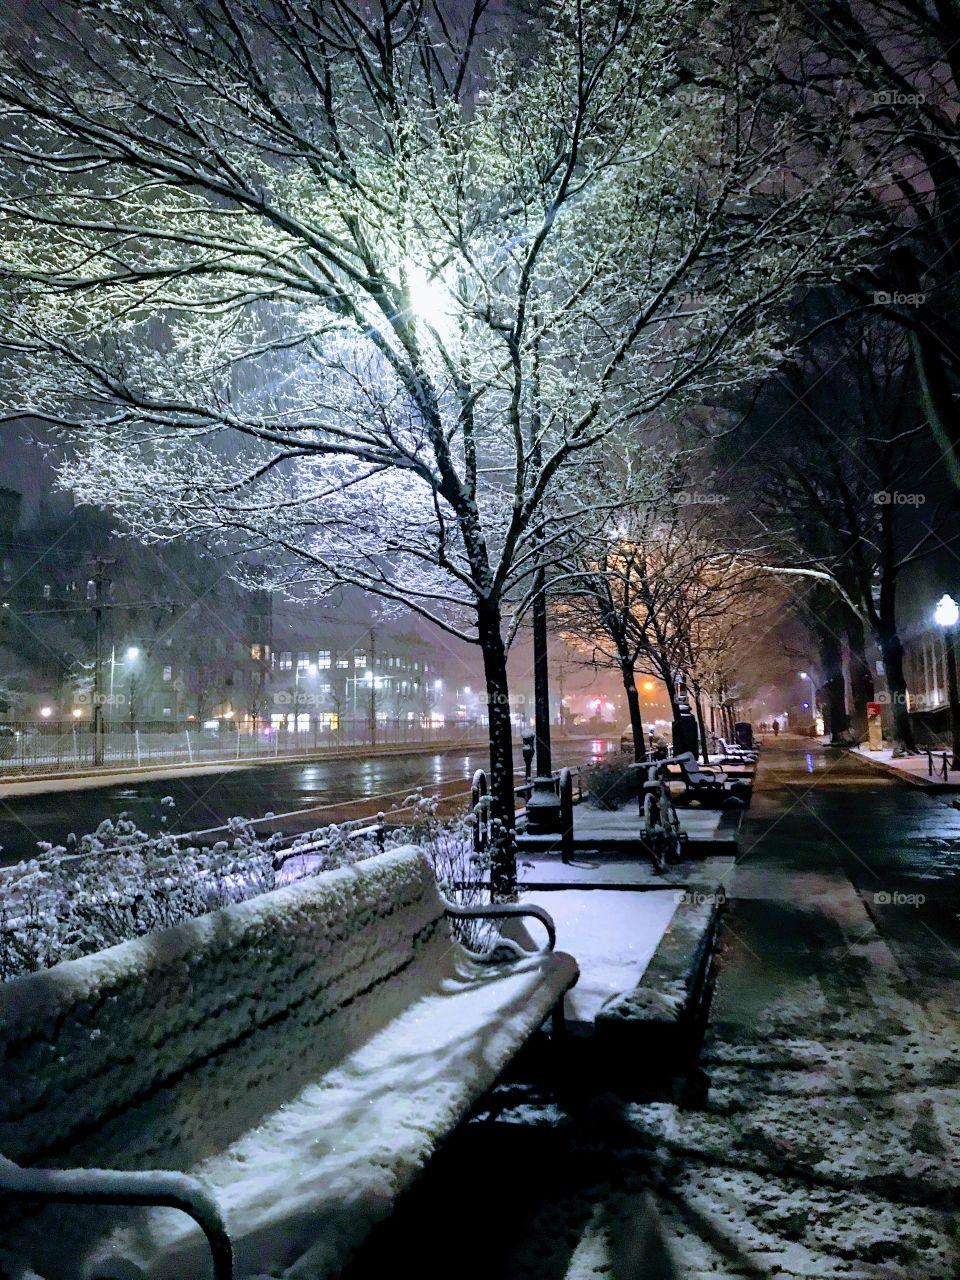 A winter night in Boston